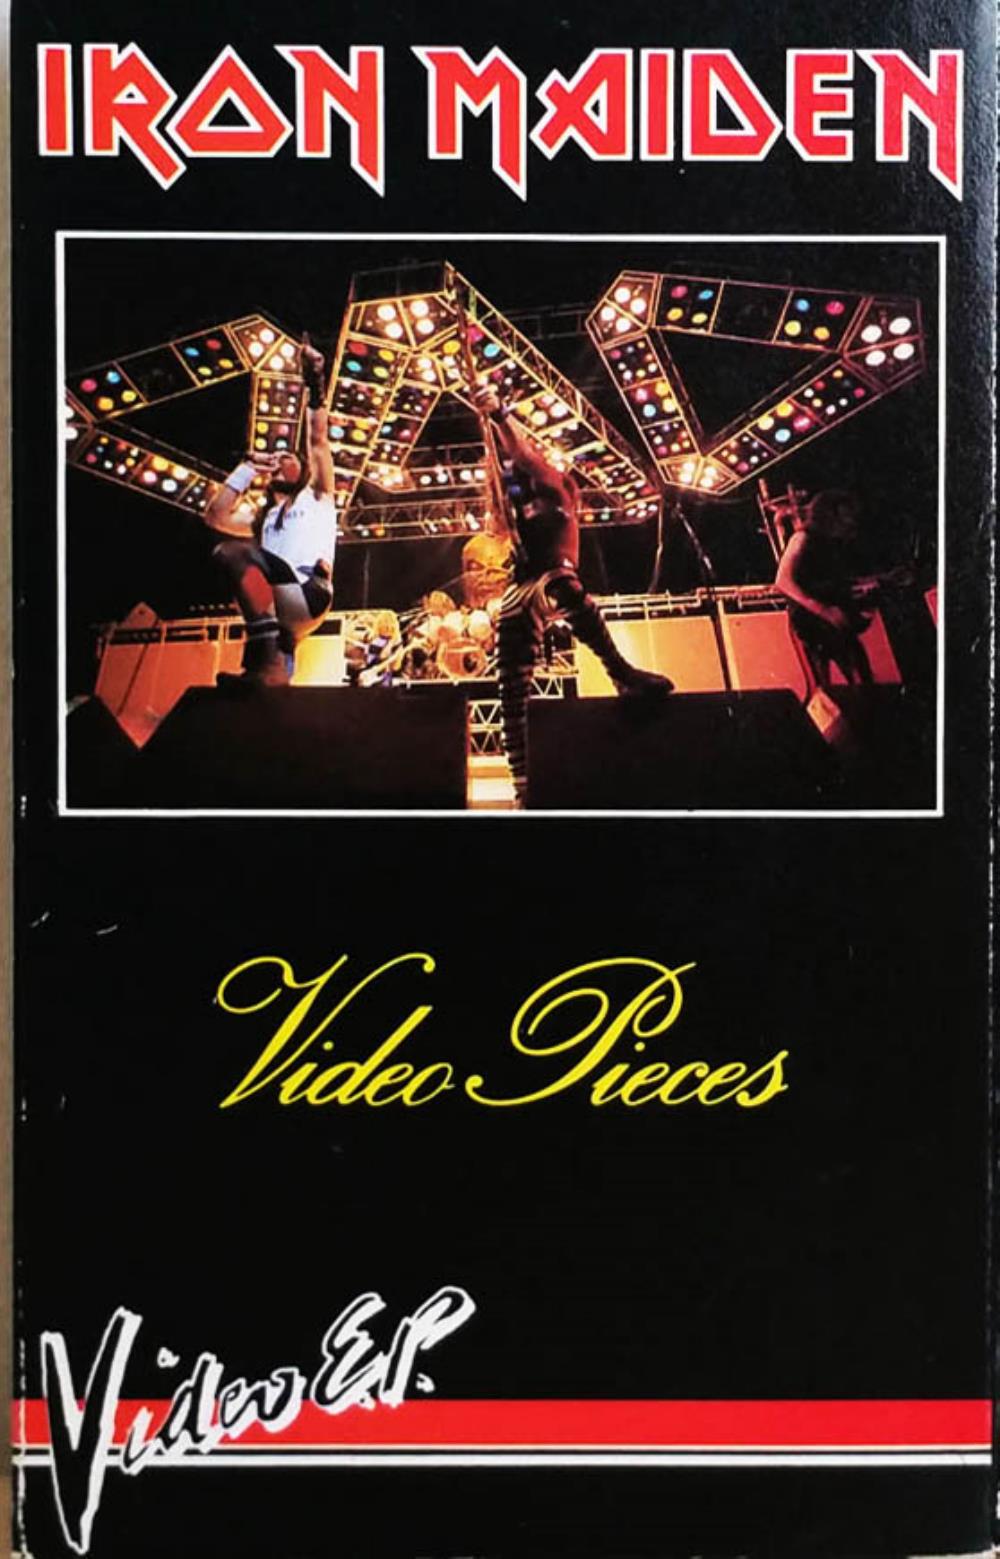 Iron Maiden Video Pieces album cover